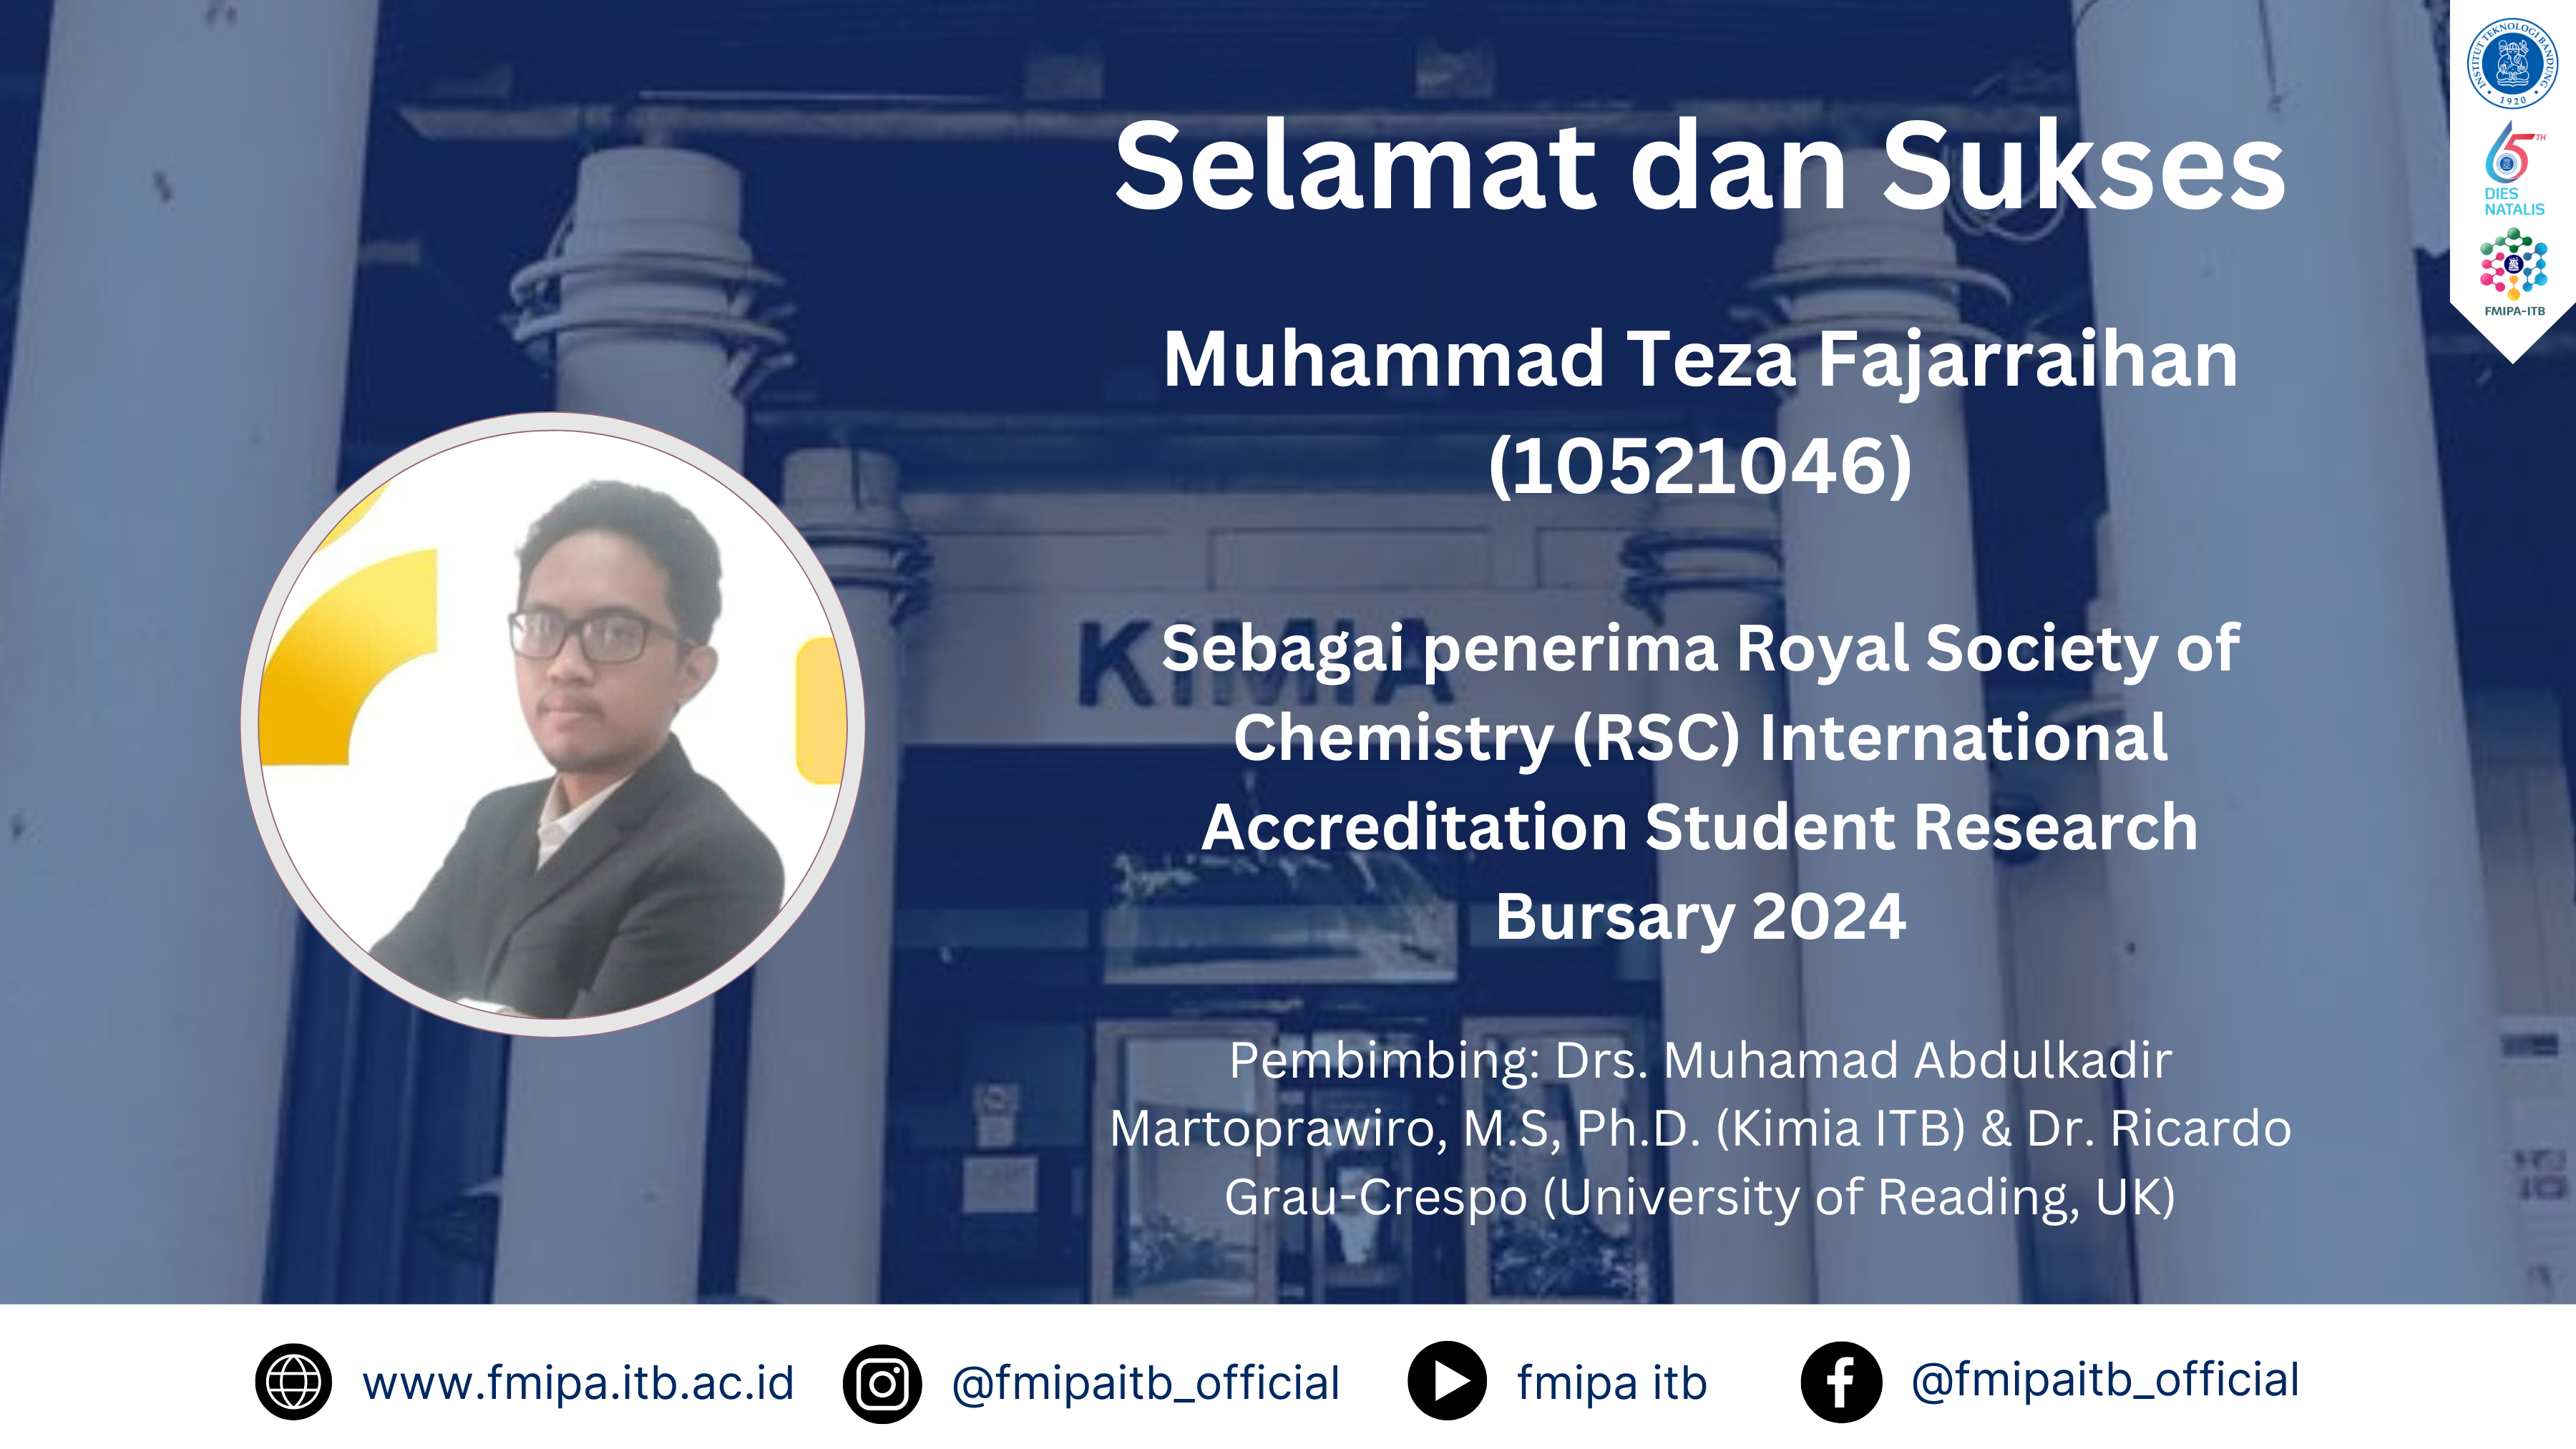 Selamat dan sukses kepada Muhammad Teza Fajarraihan (10521046), penerima Royal Society of Chemistry (RSC) International Accreditation Student Research Bursary 2024.